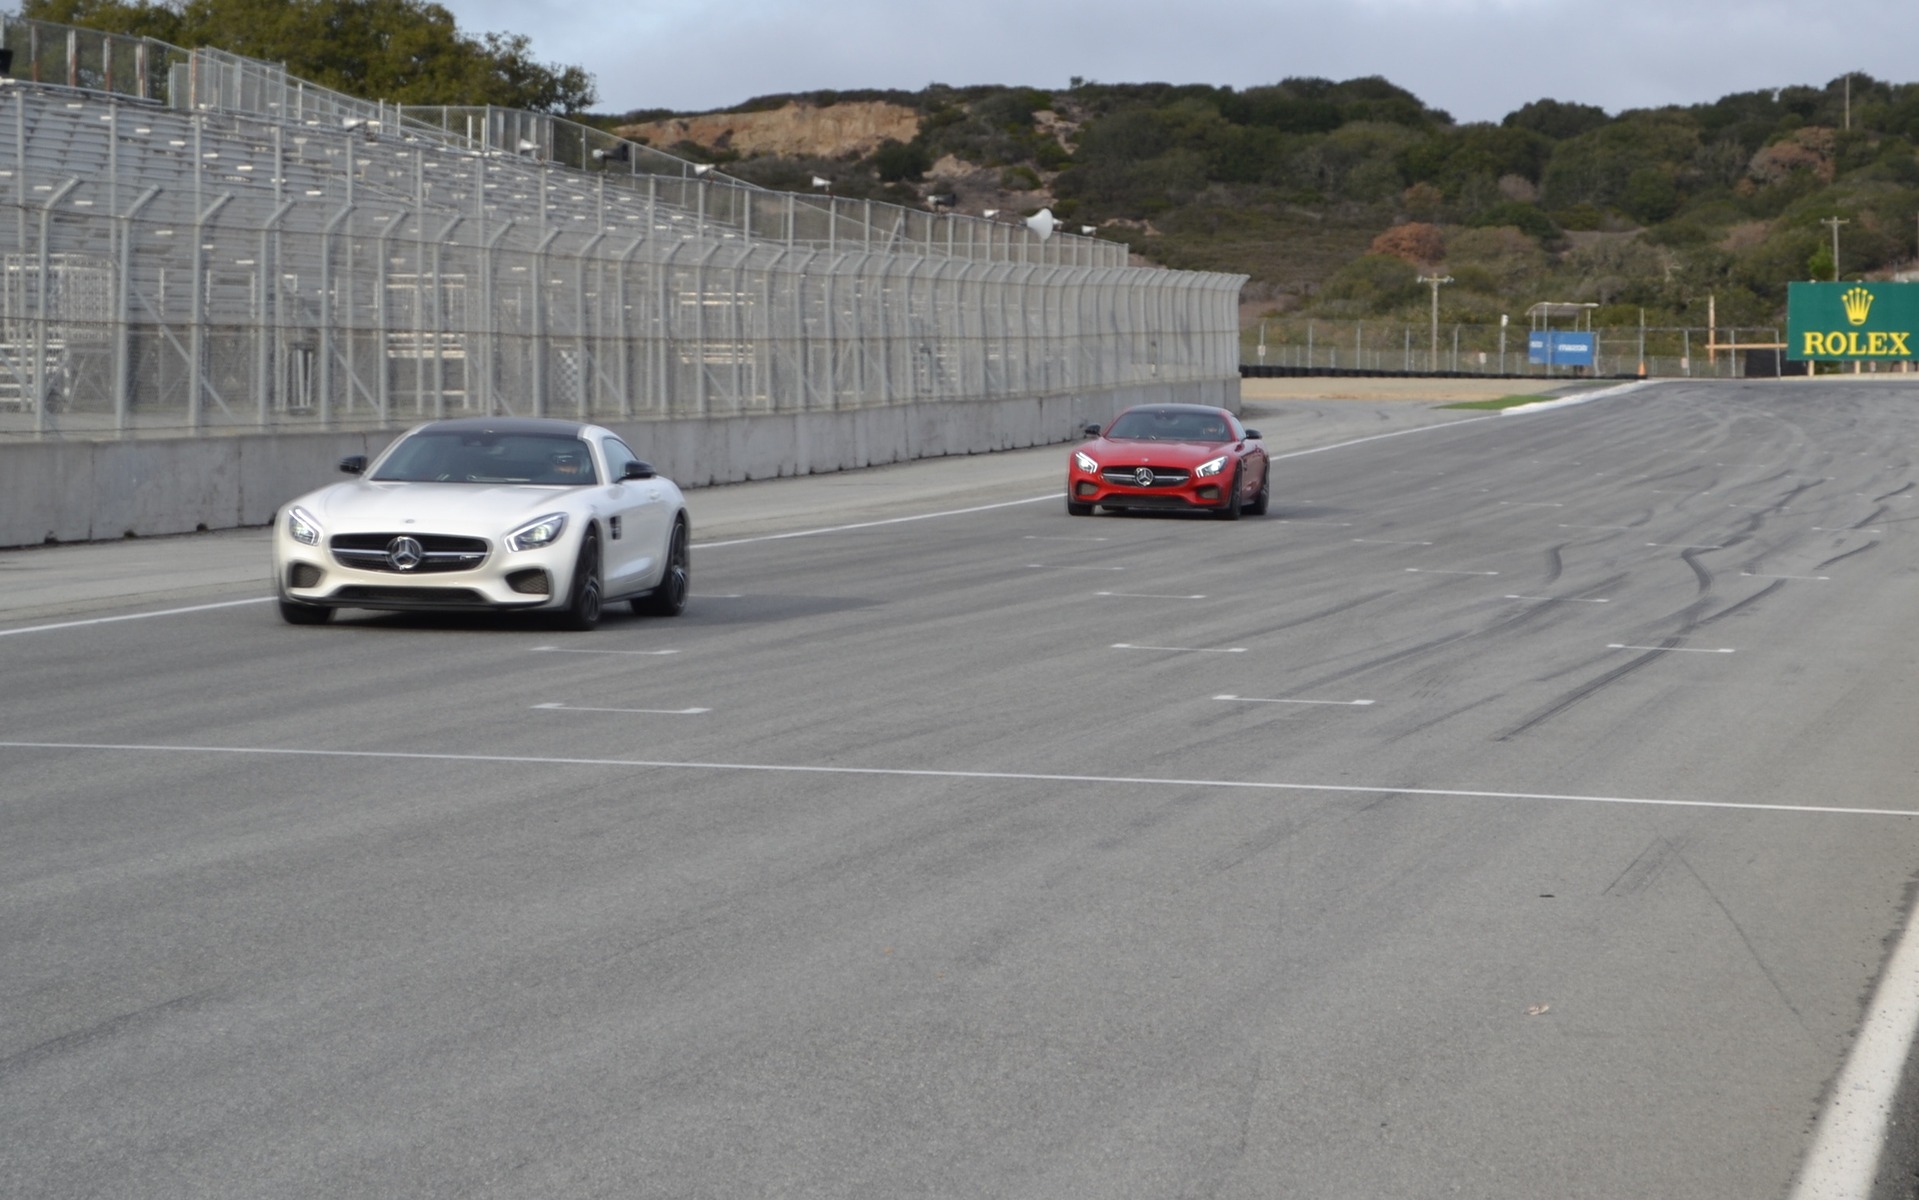  La GT S boucle le sprint du 0-100 km/h en environ 3,8 secondes